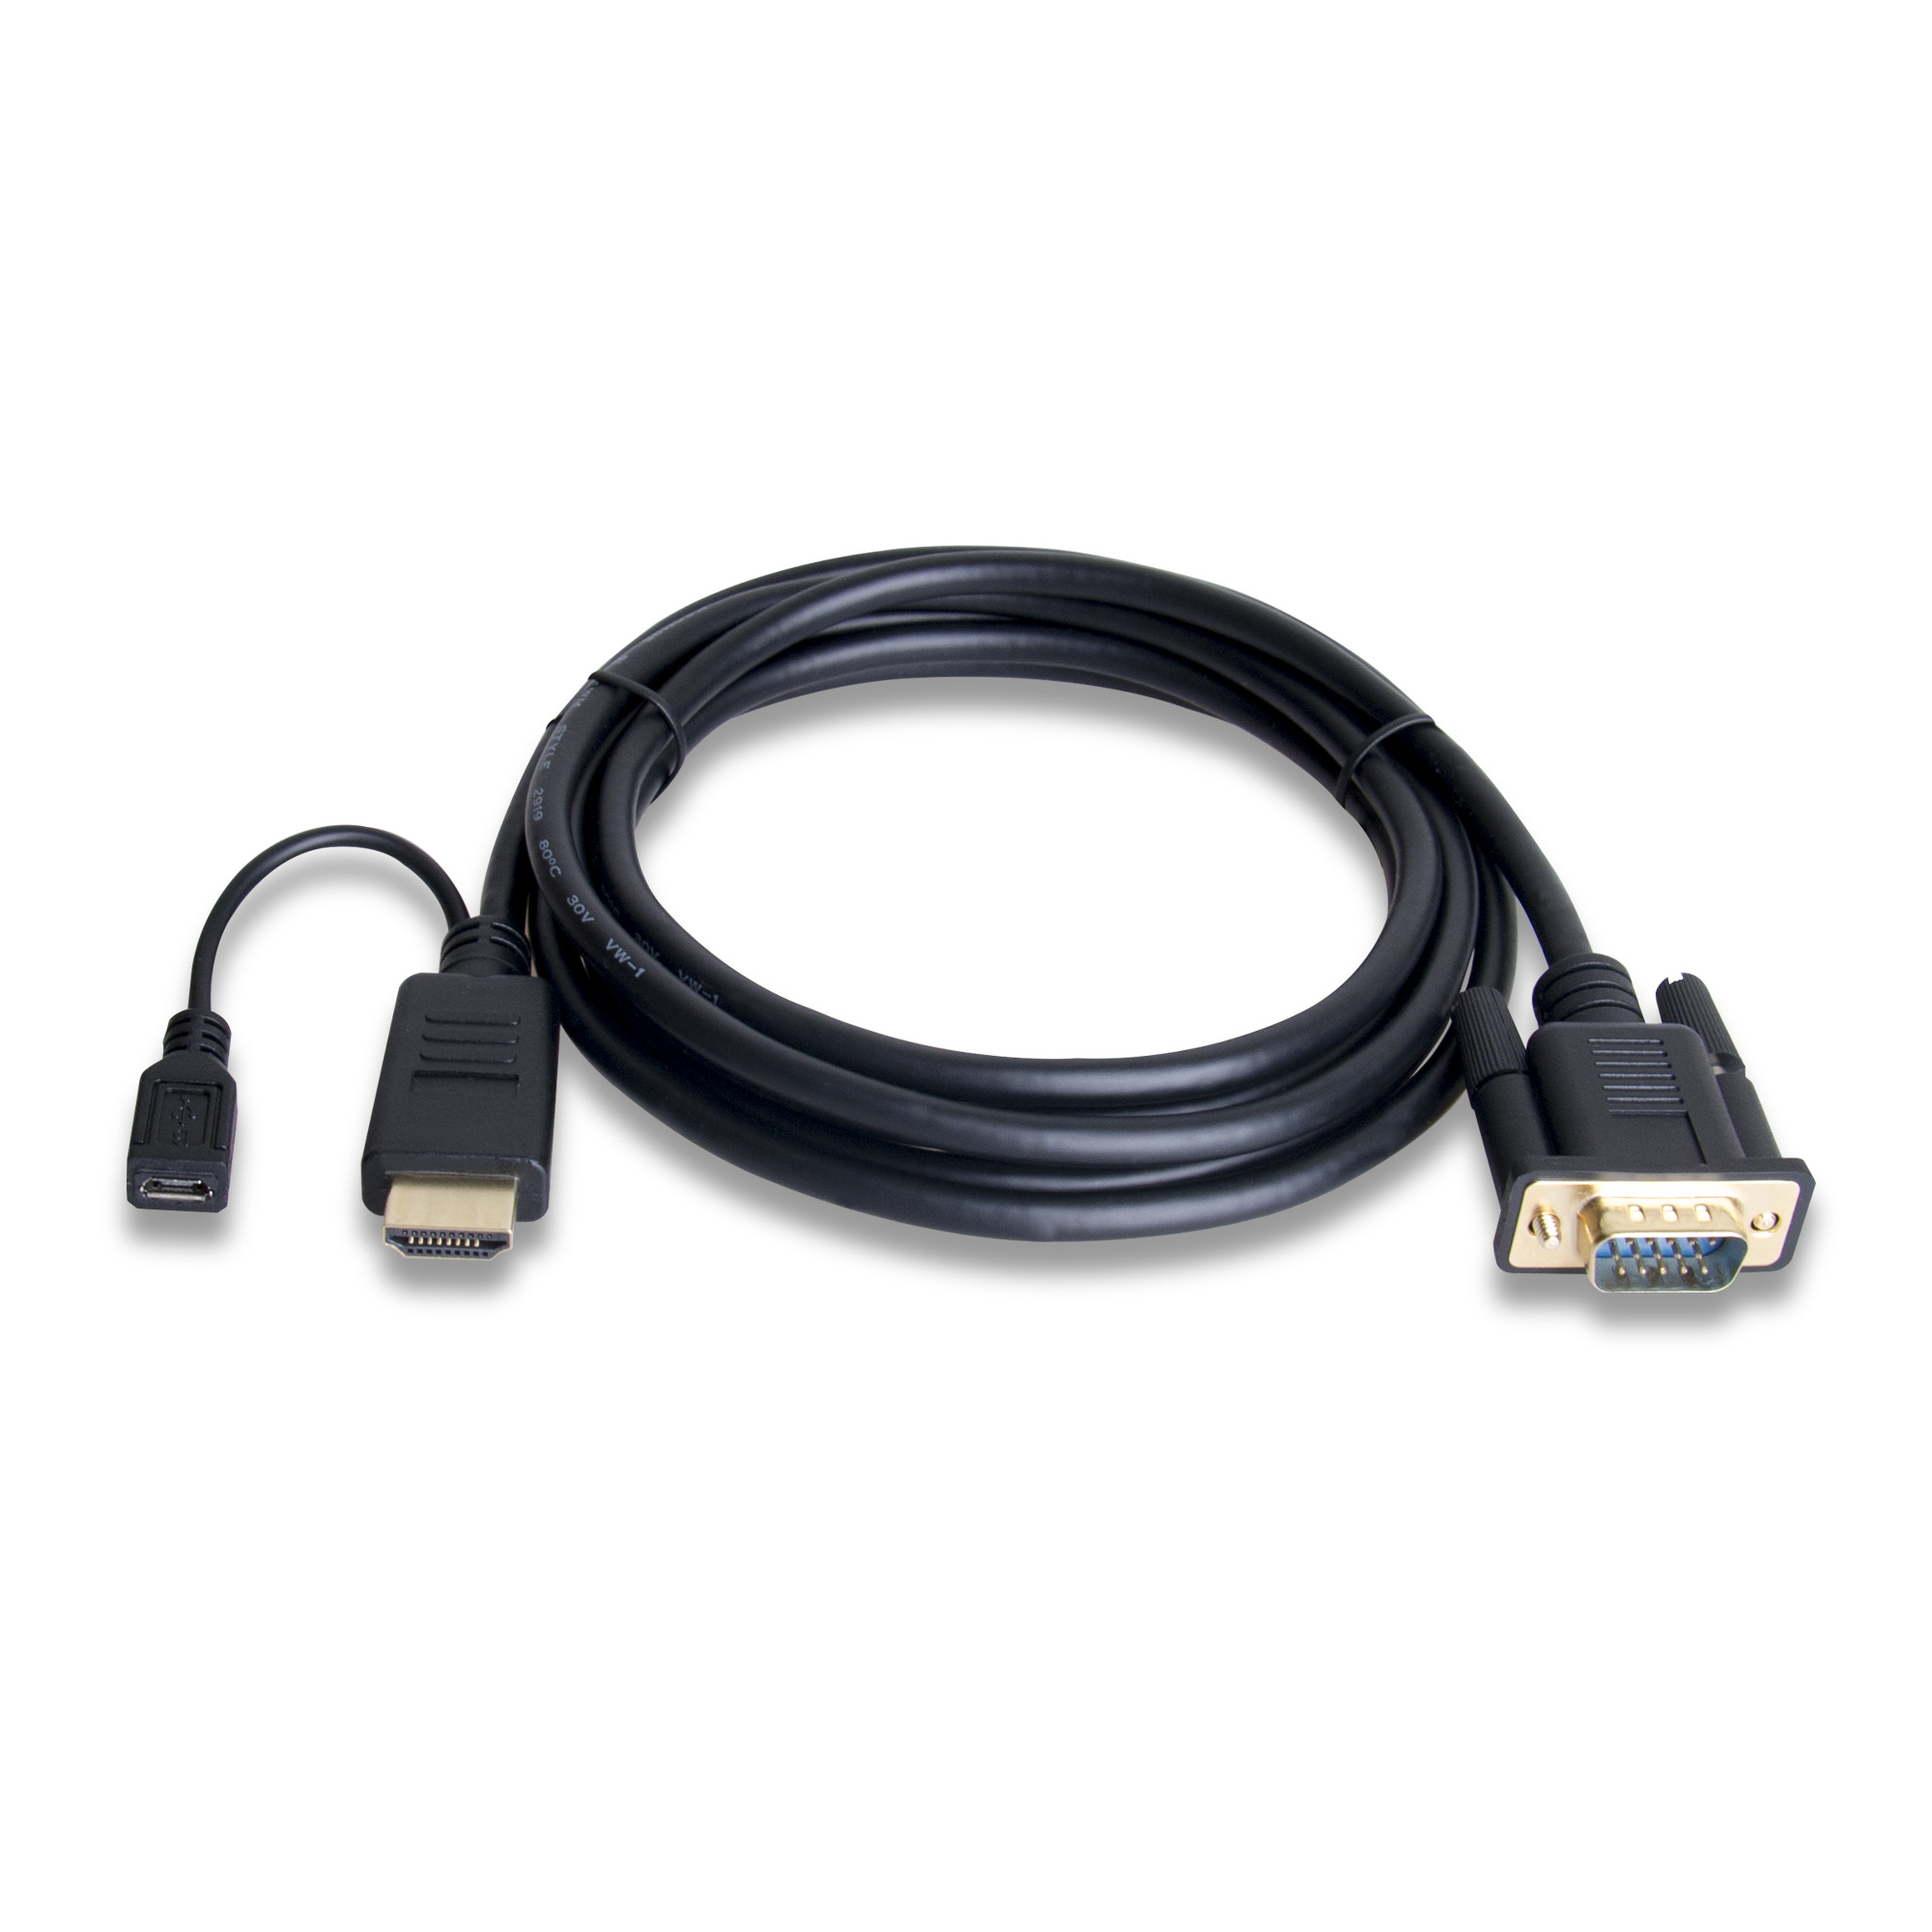 vervolgens Niet doen Snoep 6 ft. HDMI to VGA Adapter Cable w/ Audio | gofanco